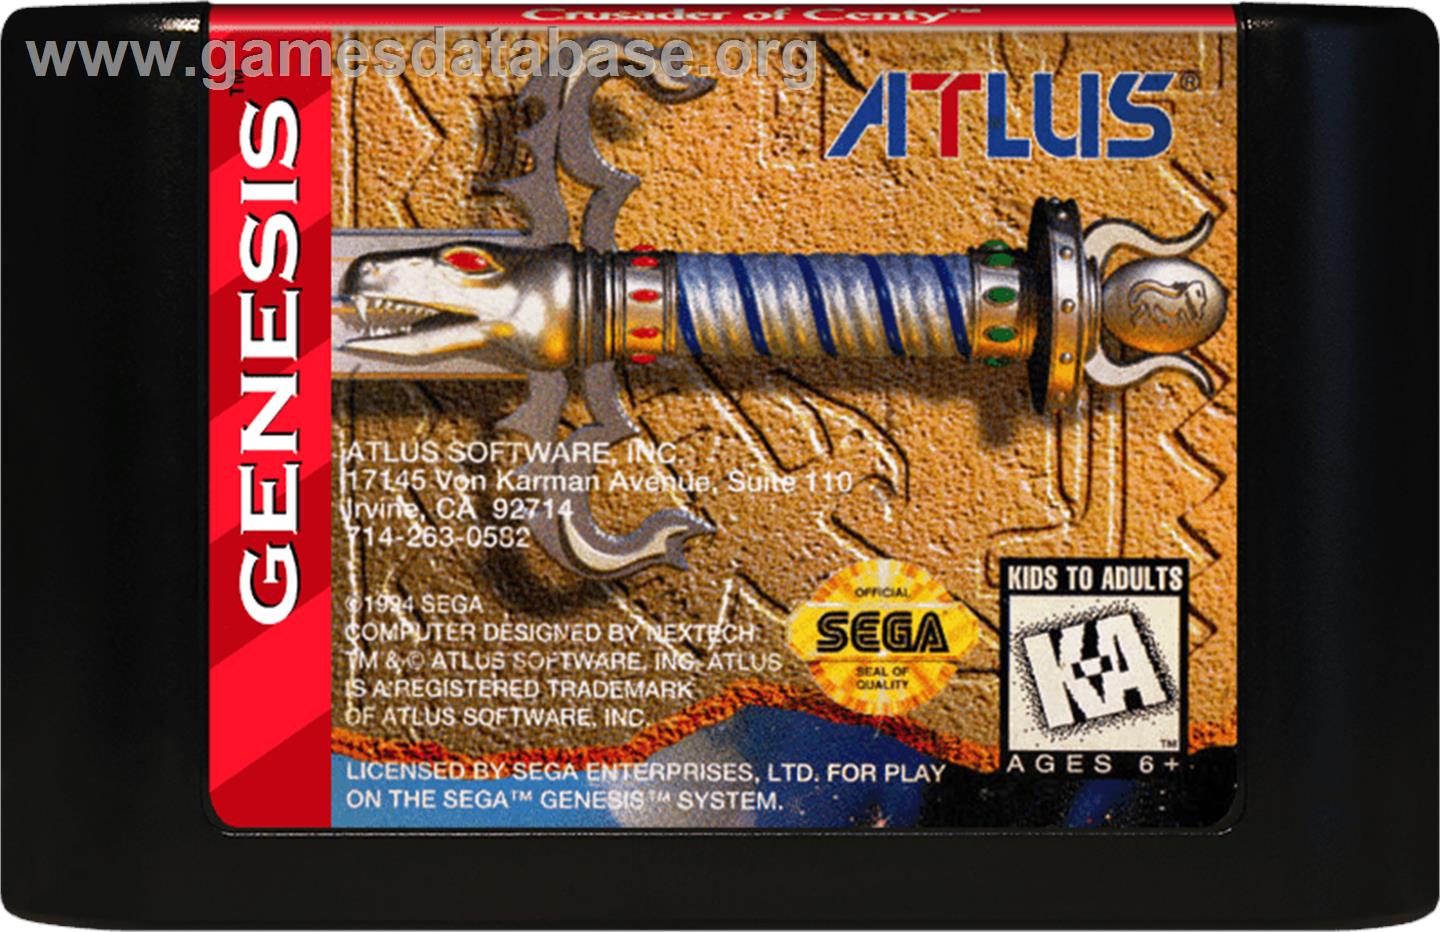 Crusader of Centy - Sega Genesis - Artwork - Cartridge